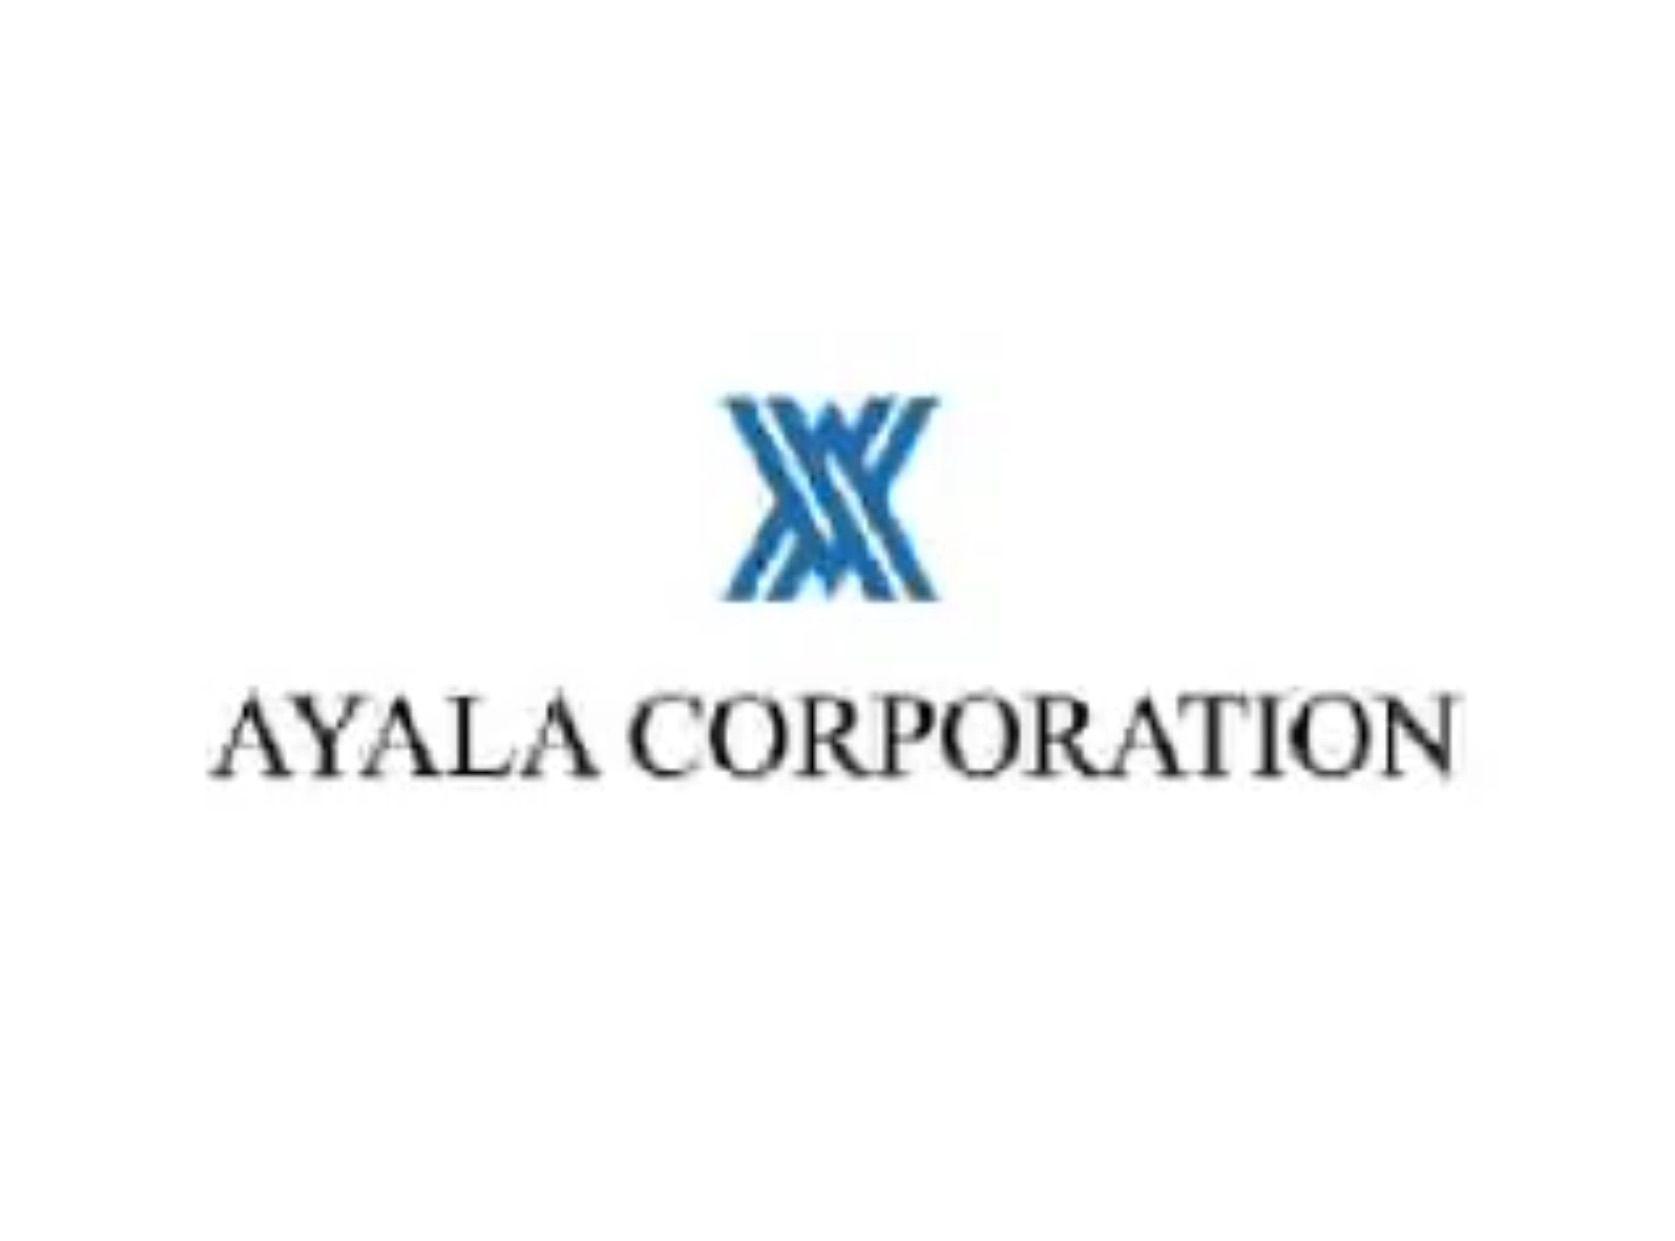 Ayala Logo - Ayala Corporation